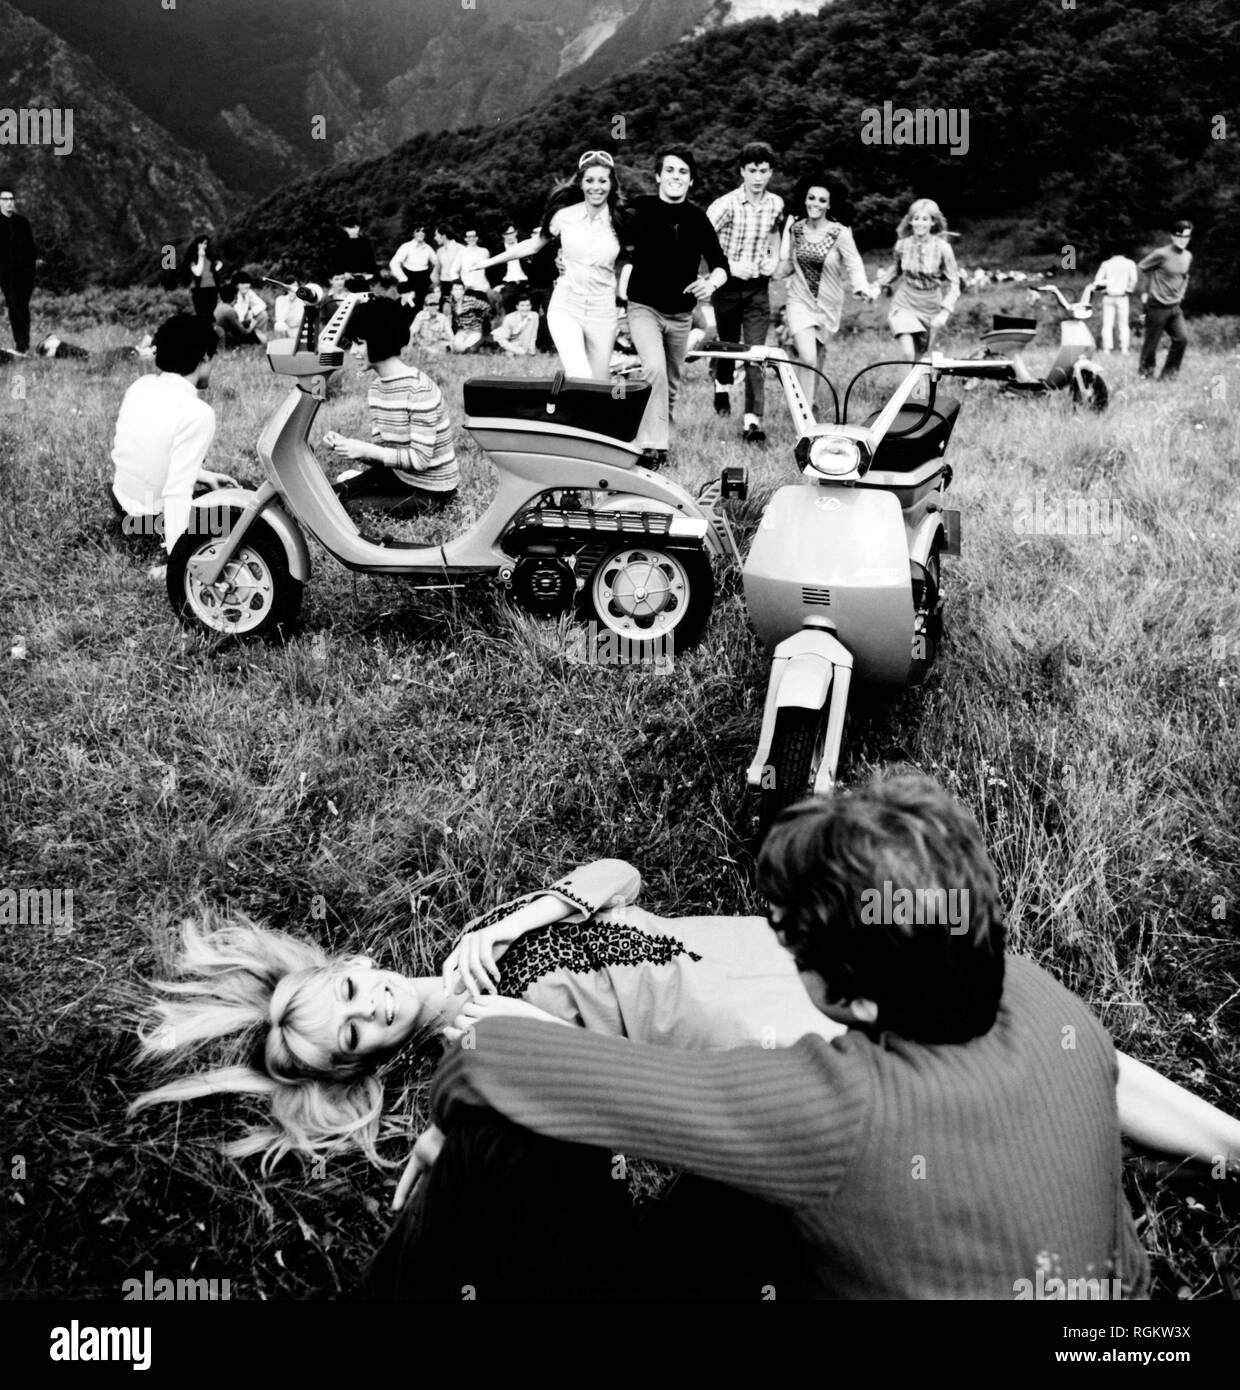 Les jeunes, innocenti lambretta lui, Italie 1968 Banque D'Images